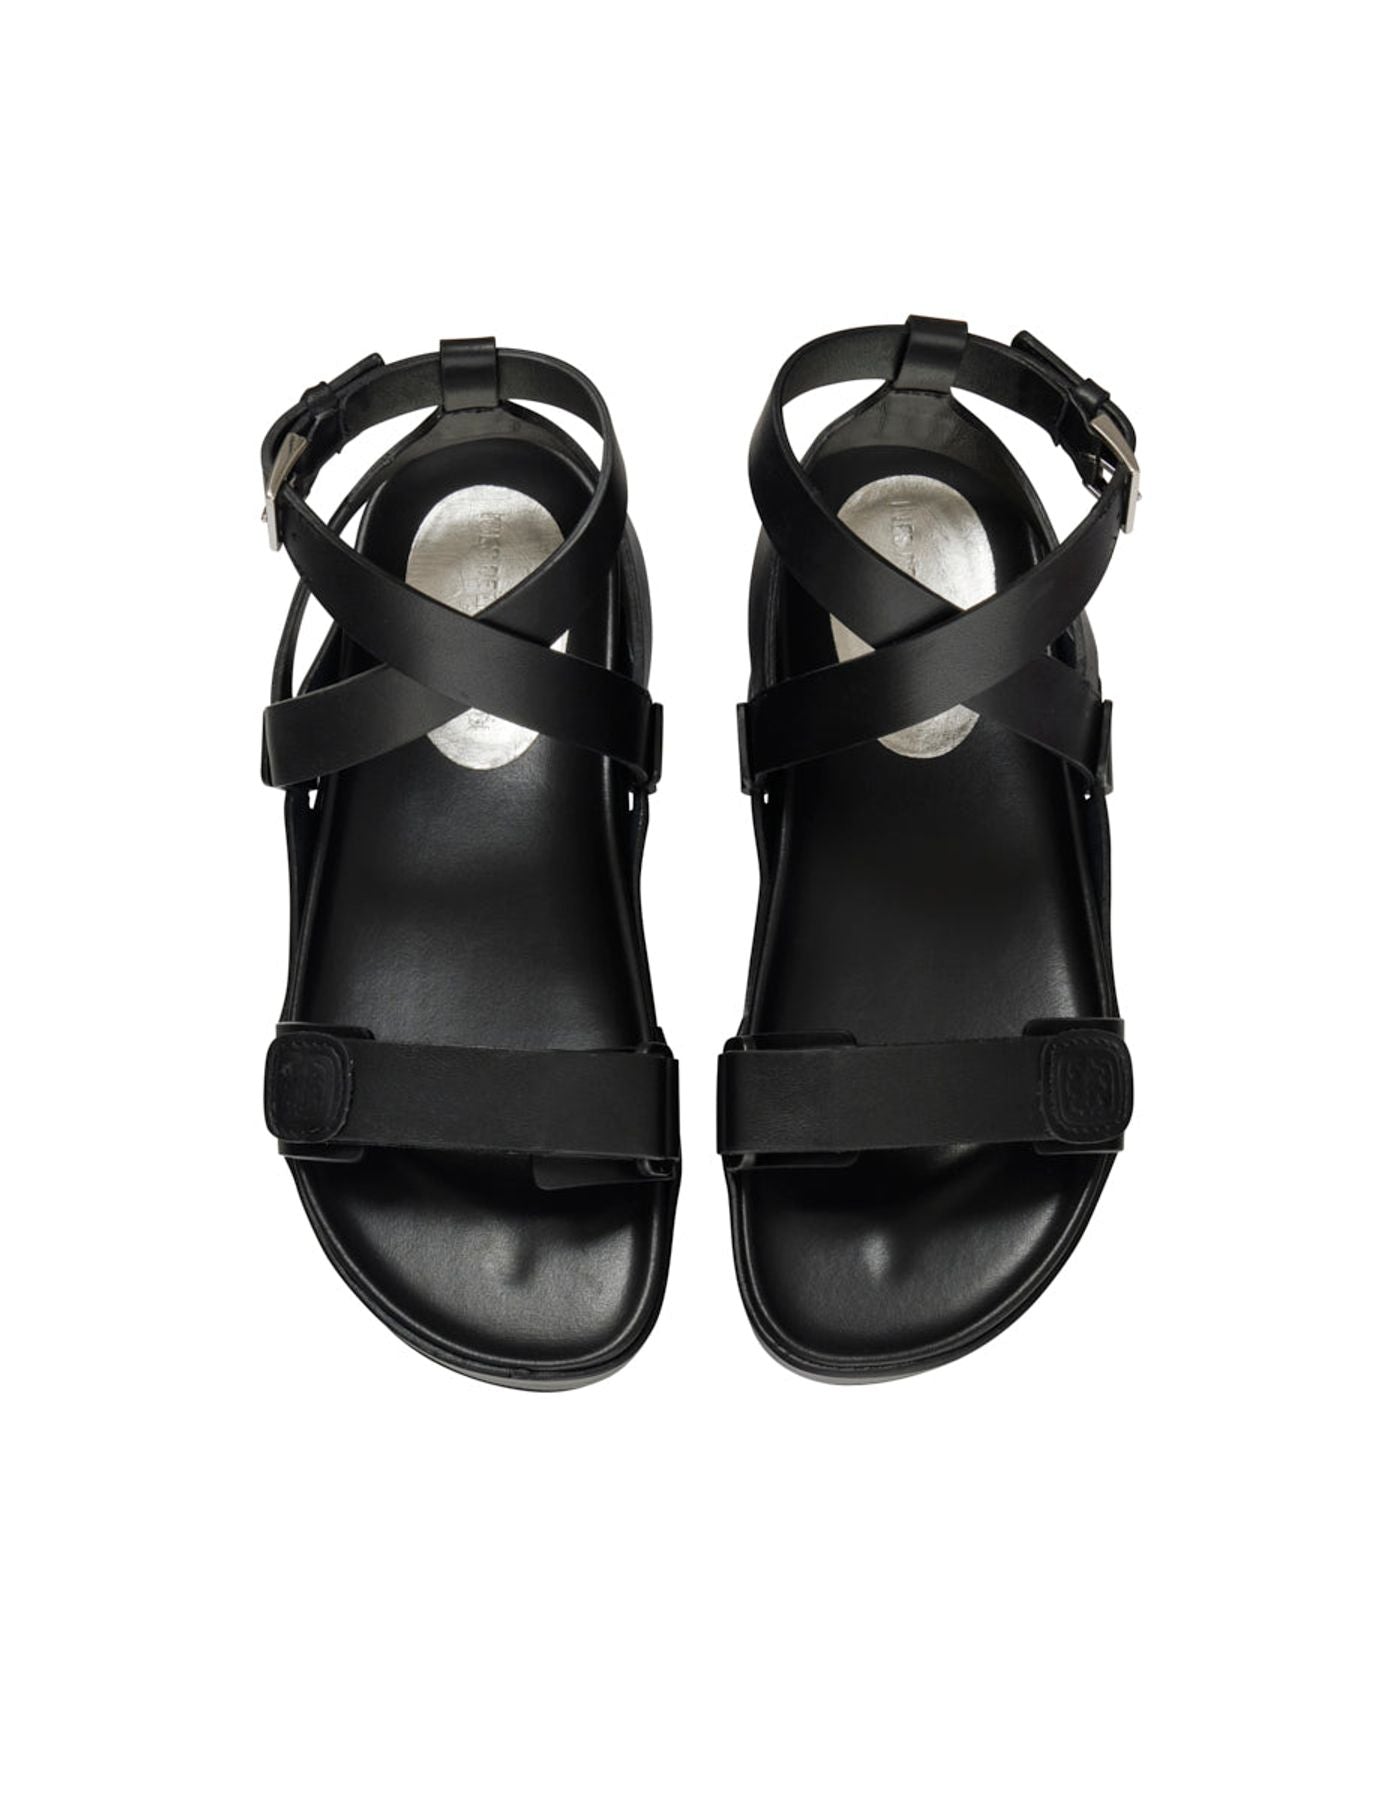 Black platform sandal - Ines de la Fressange Paris